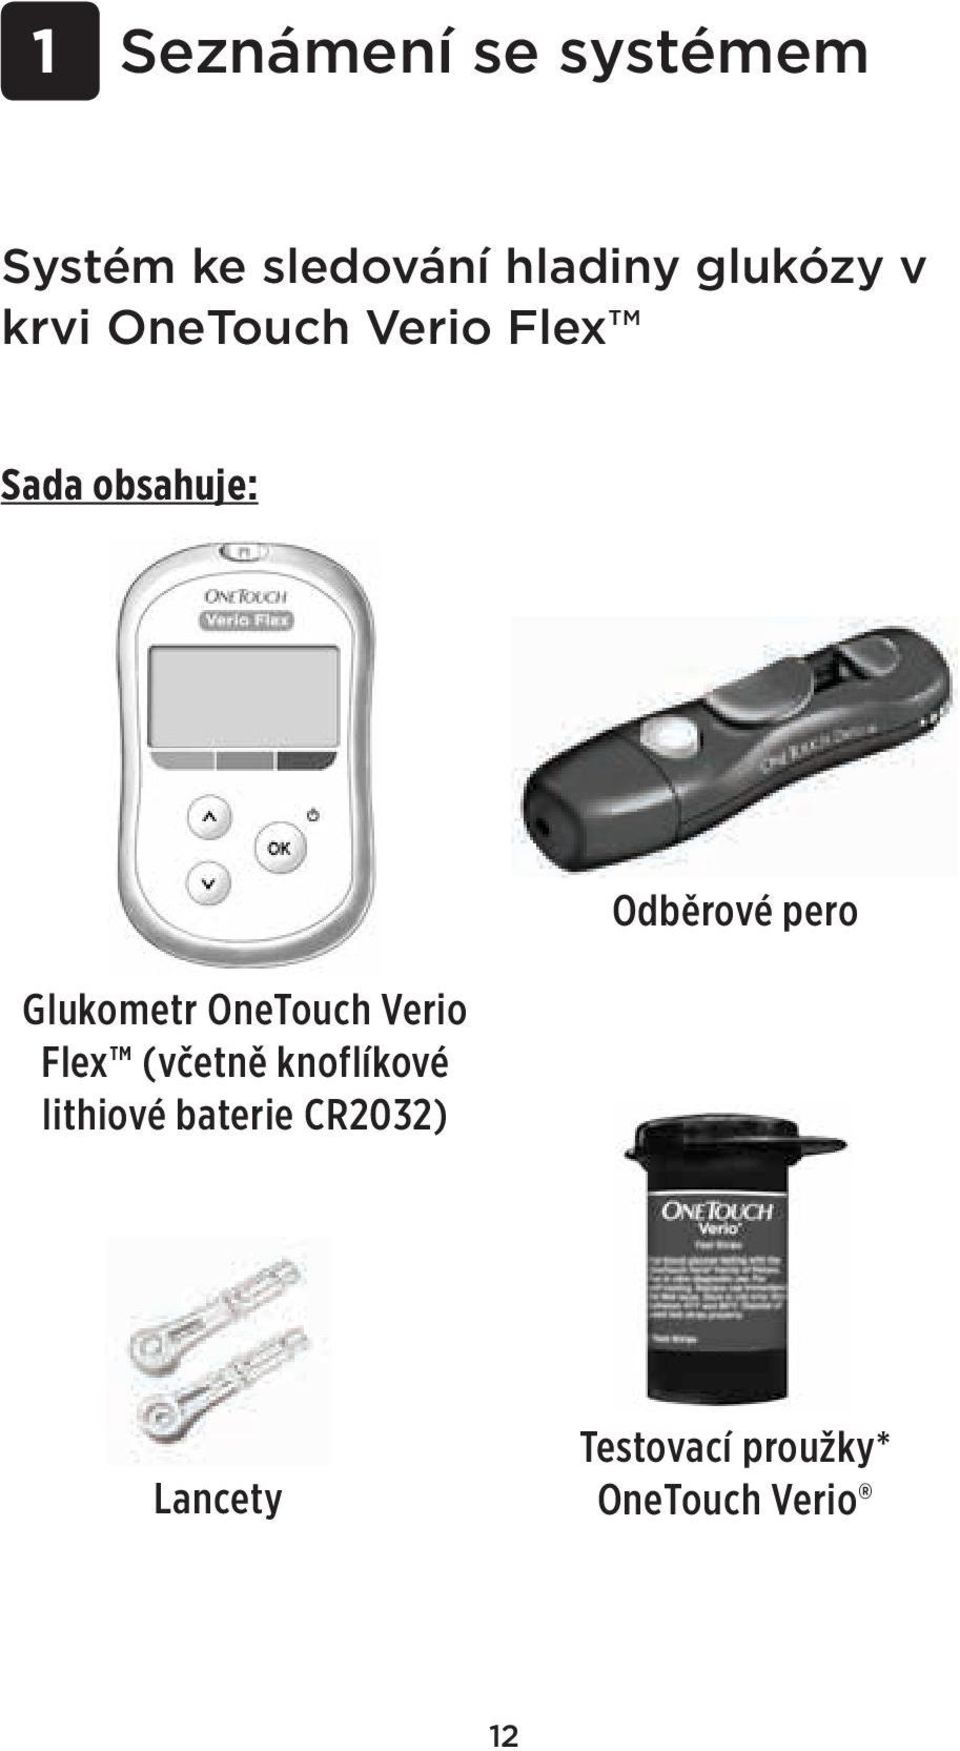 Glukometr OneTouch Verio Flex (včetně knoflíkové lithiové